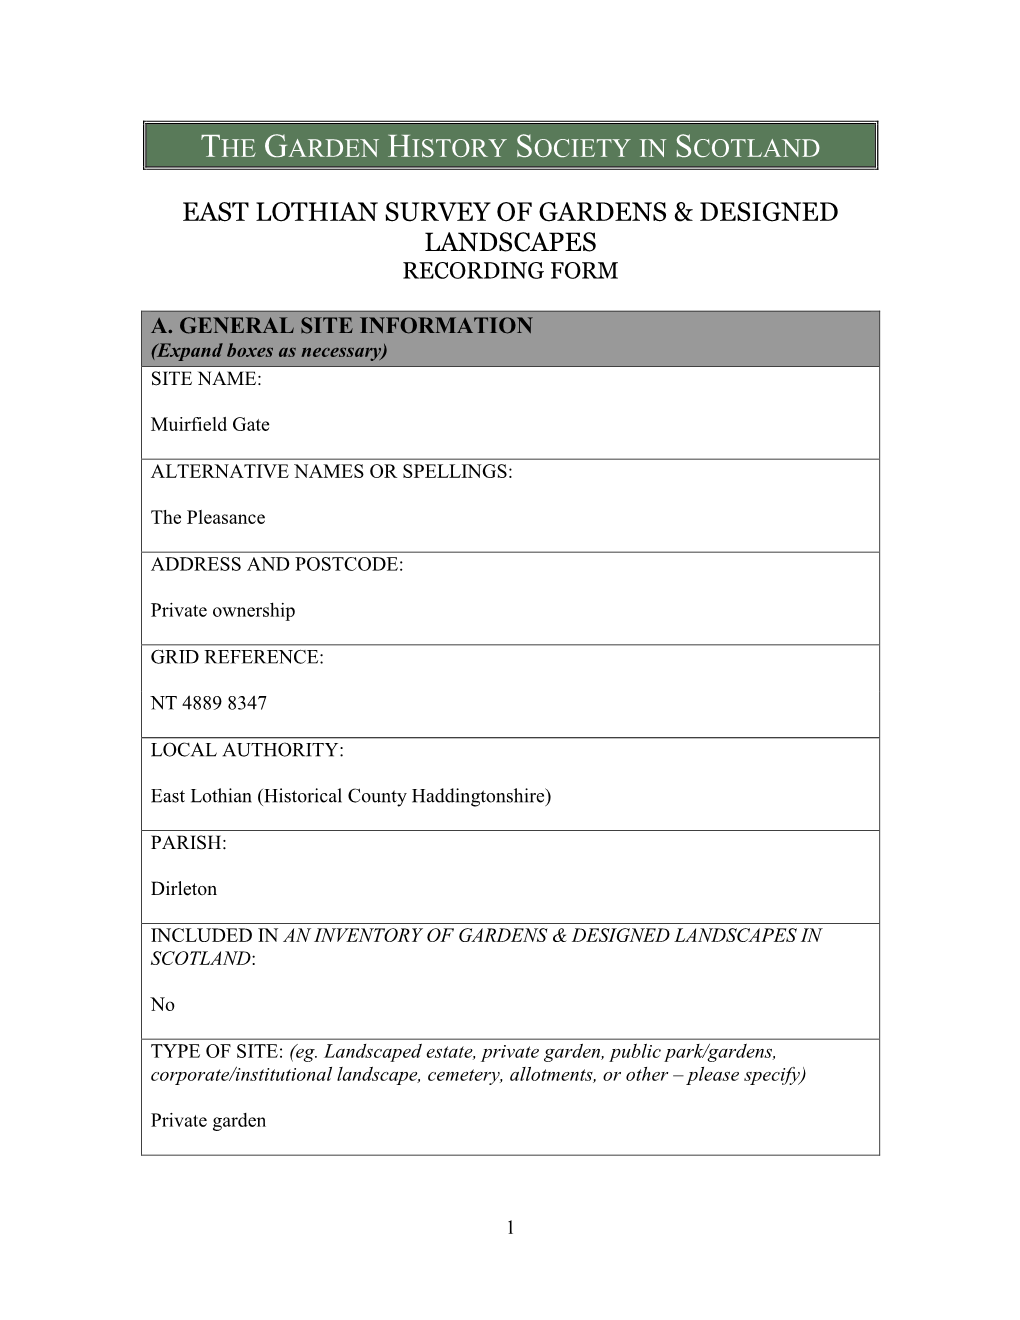 East Lothian Survey of Gardens & Designed Landscapes